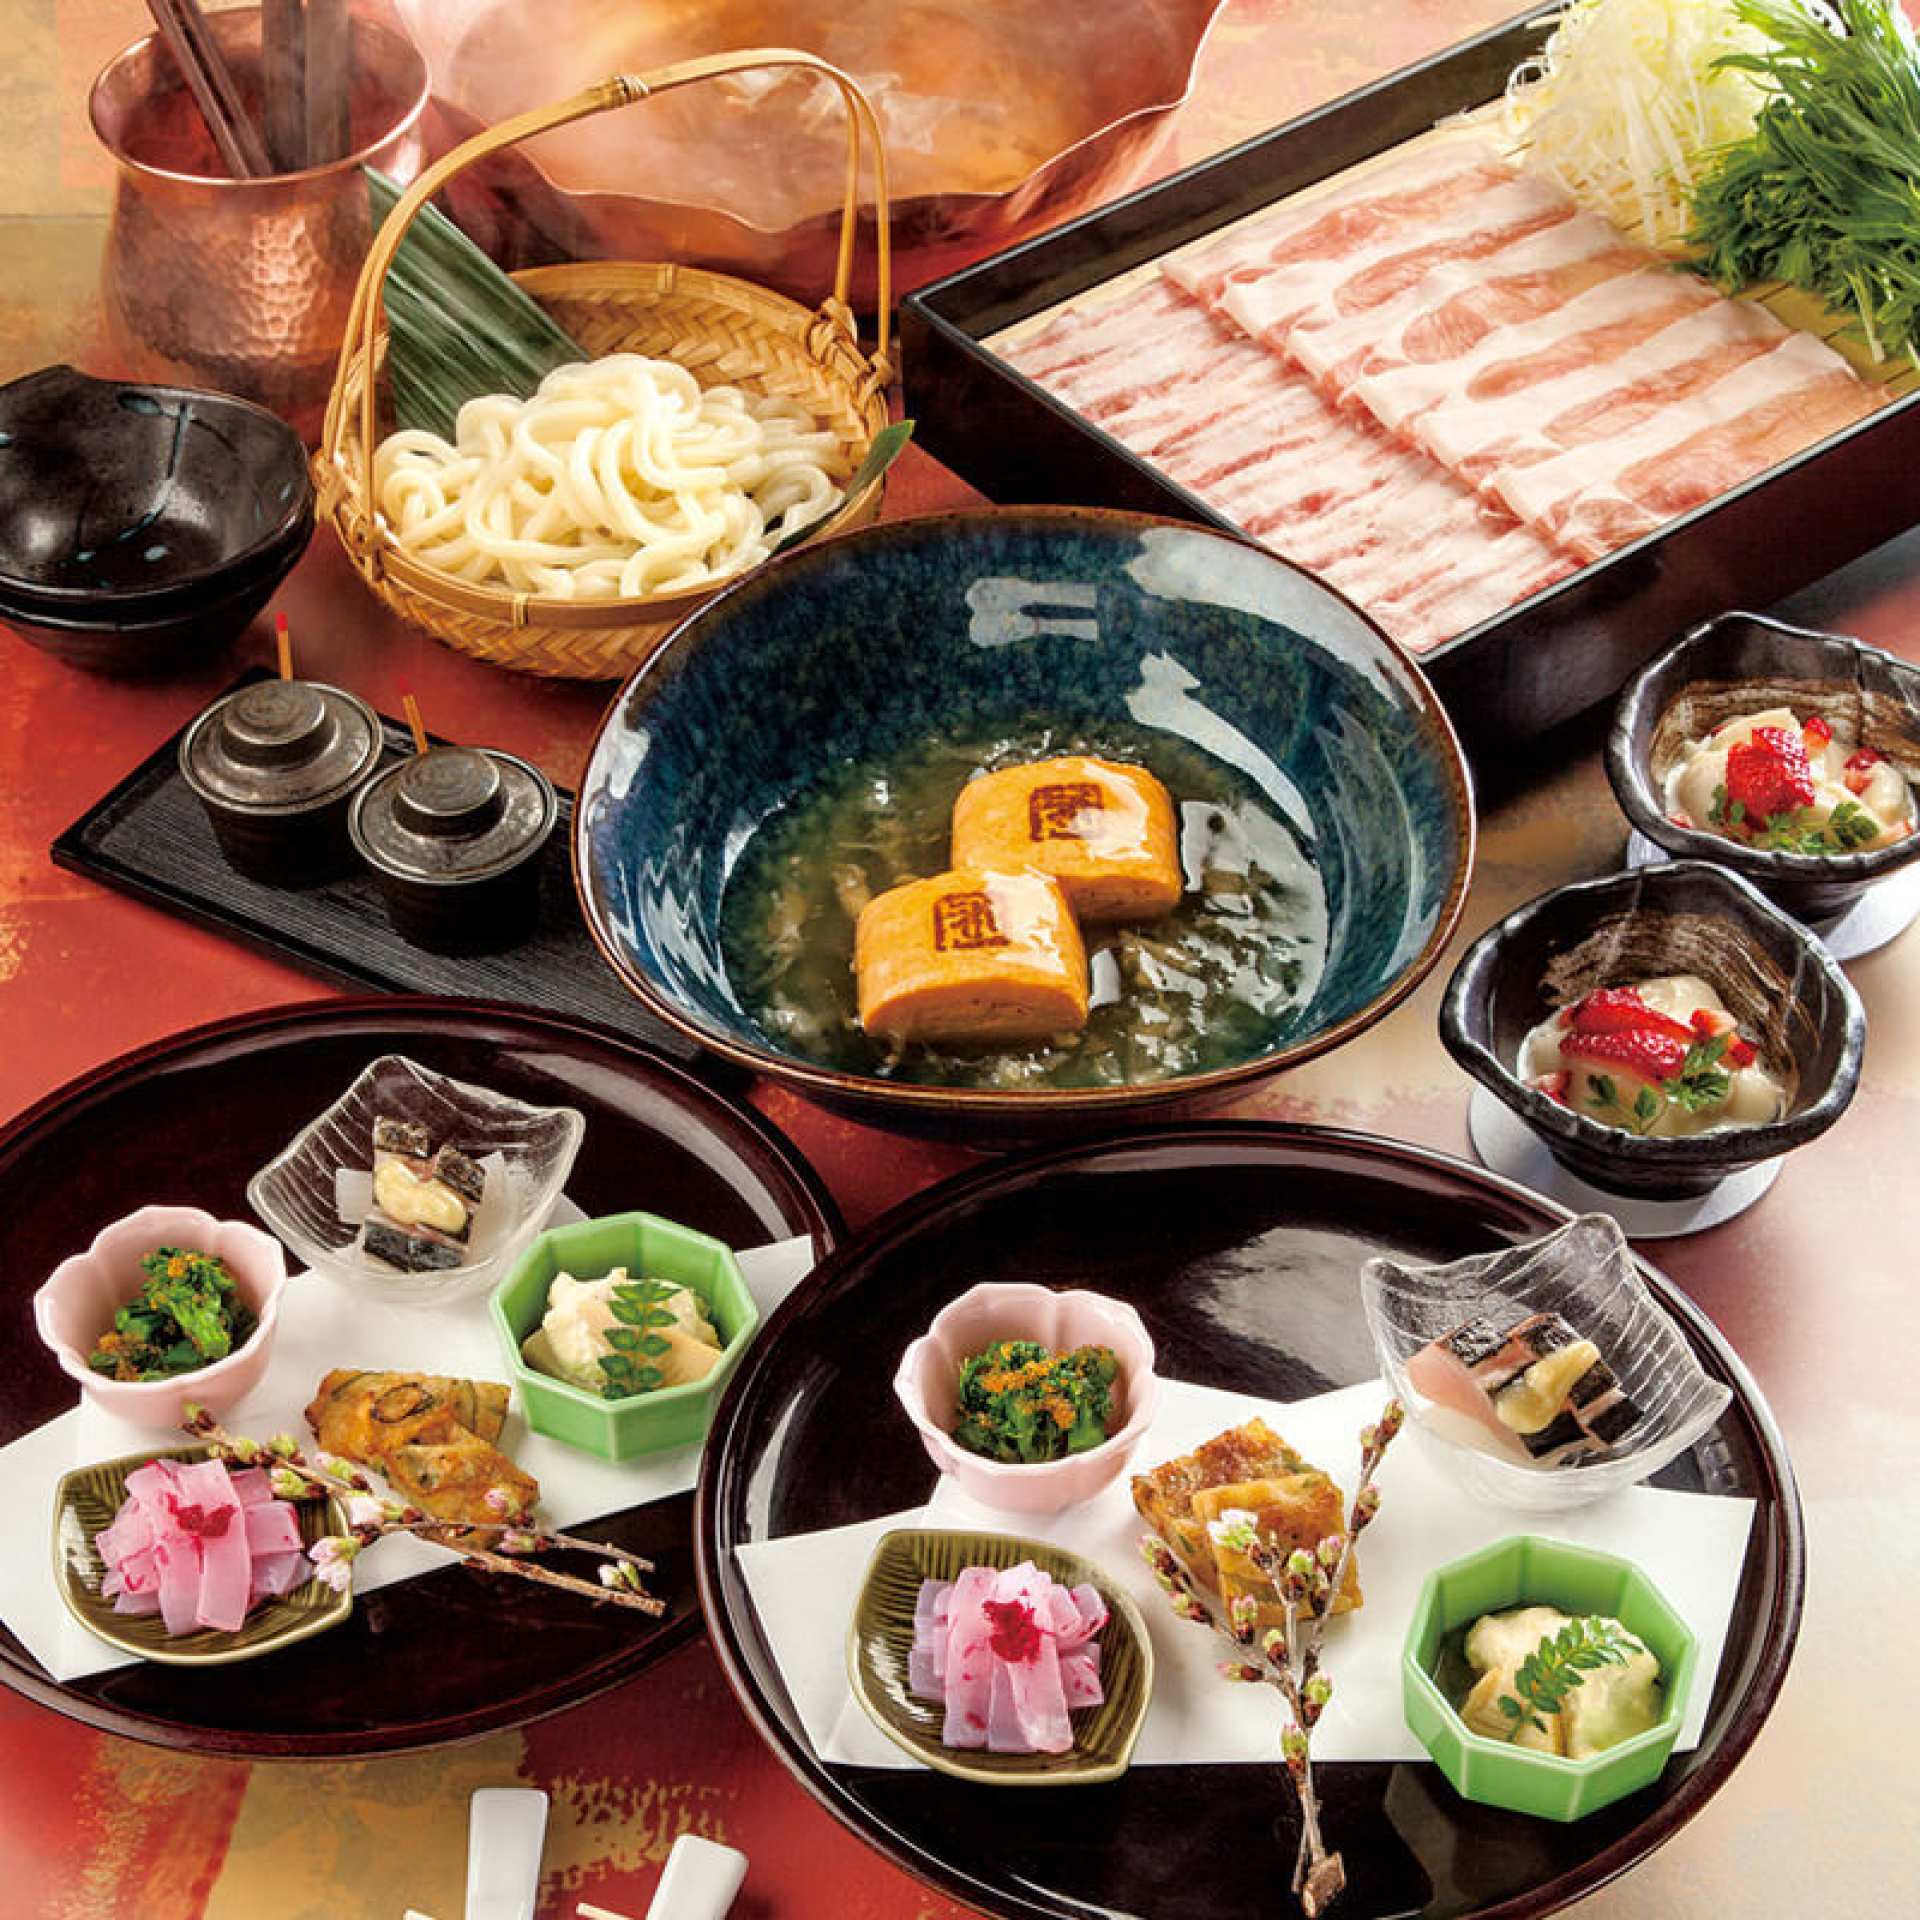  【東京大阪美食】日式涮涮鍋和食料理・わだ家 